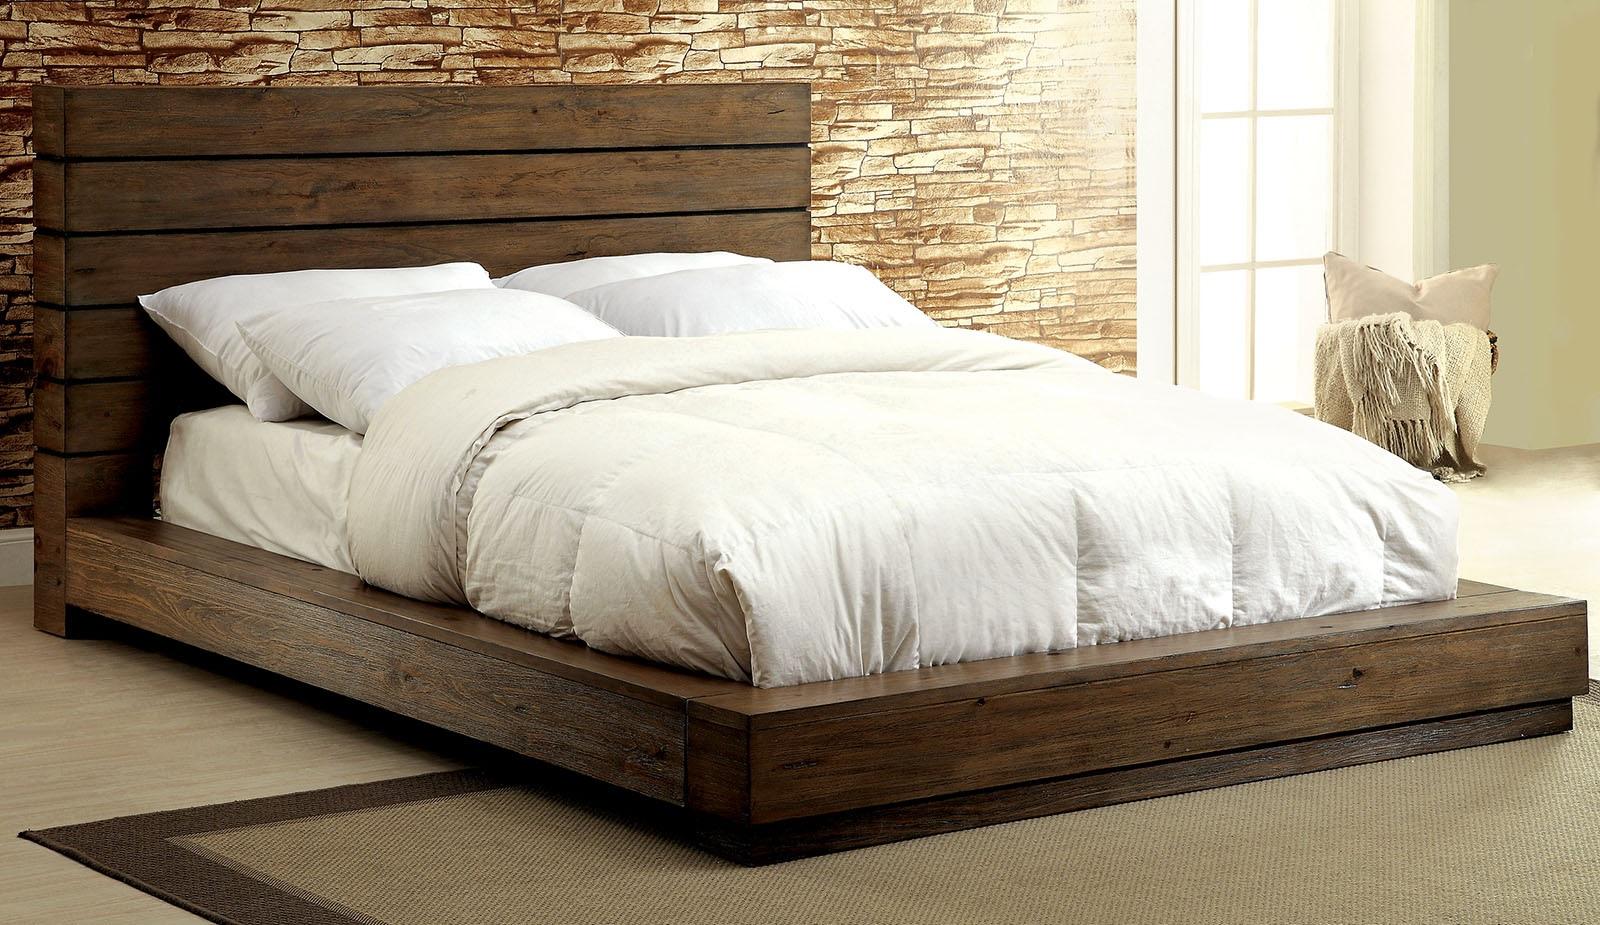 

    
Rustic Natural Solid Wood Queen Bedroom Set 6pcs Furniture of America CM7623-Q Coimbra
